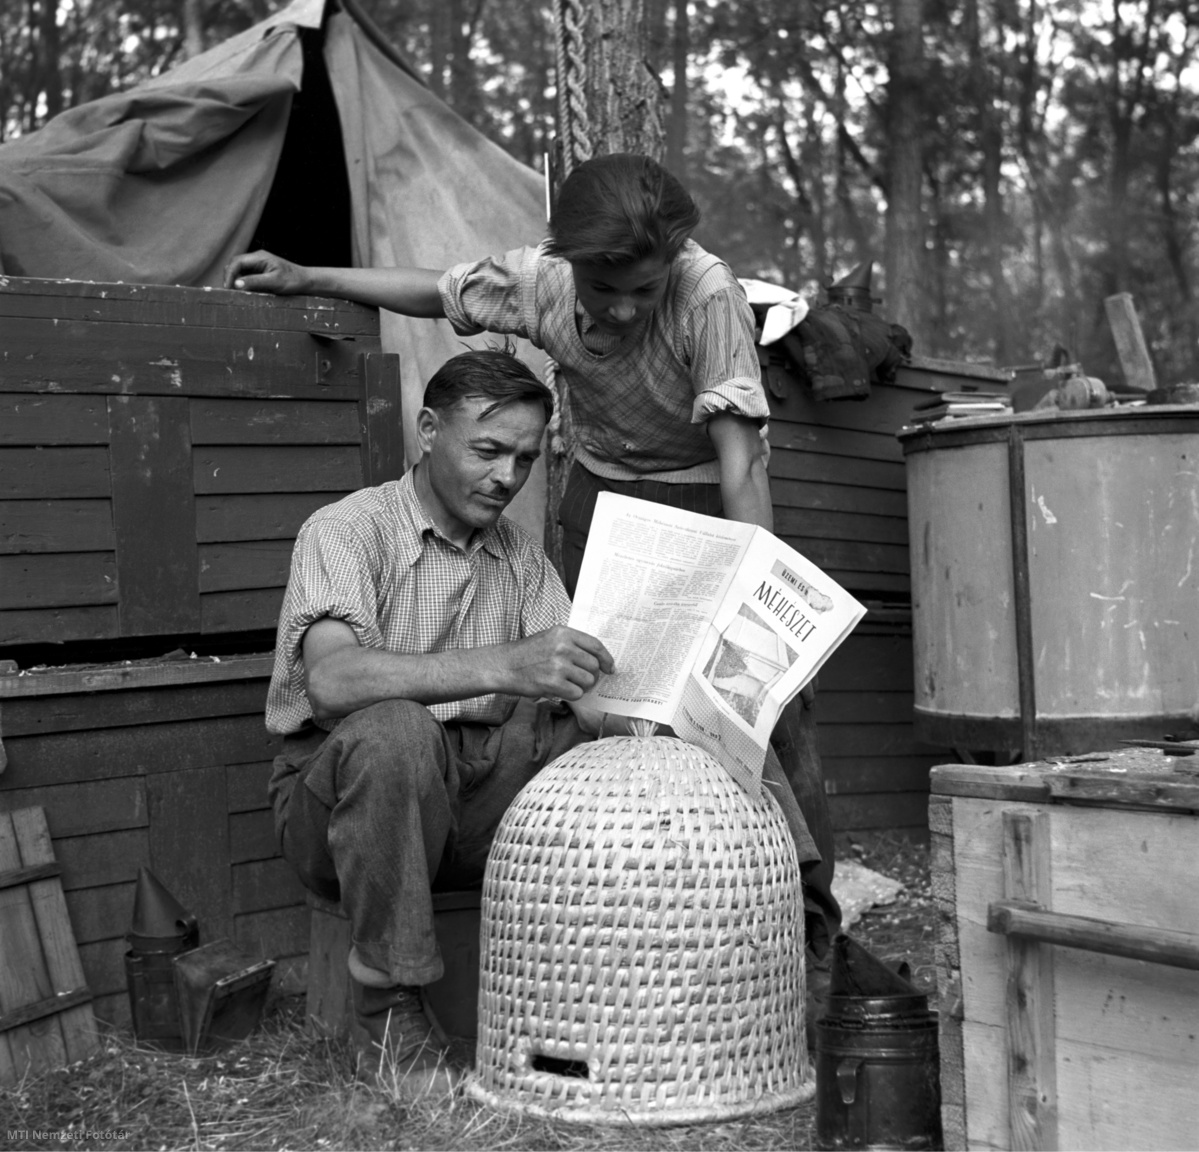 Magyarország, 1954. június 14. Szarvas József méhészmester (b) és Kérdő Lajos méhésztanuló a Mátrában végzett napi munka befejezése után az Üzemi és háztáji méhészet című szaklapot tanulmányozzák. A felvétel készítésének pontos helyszíne ismeretlen.